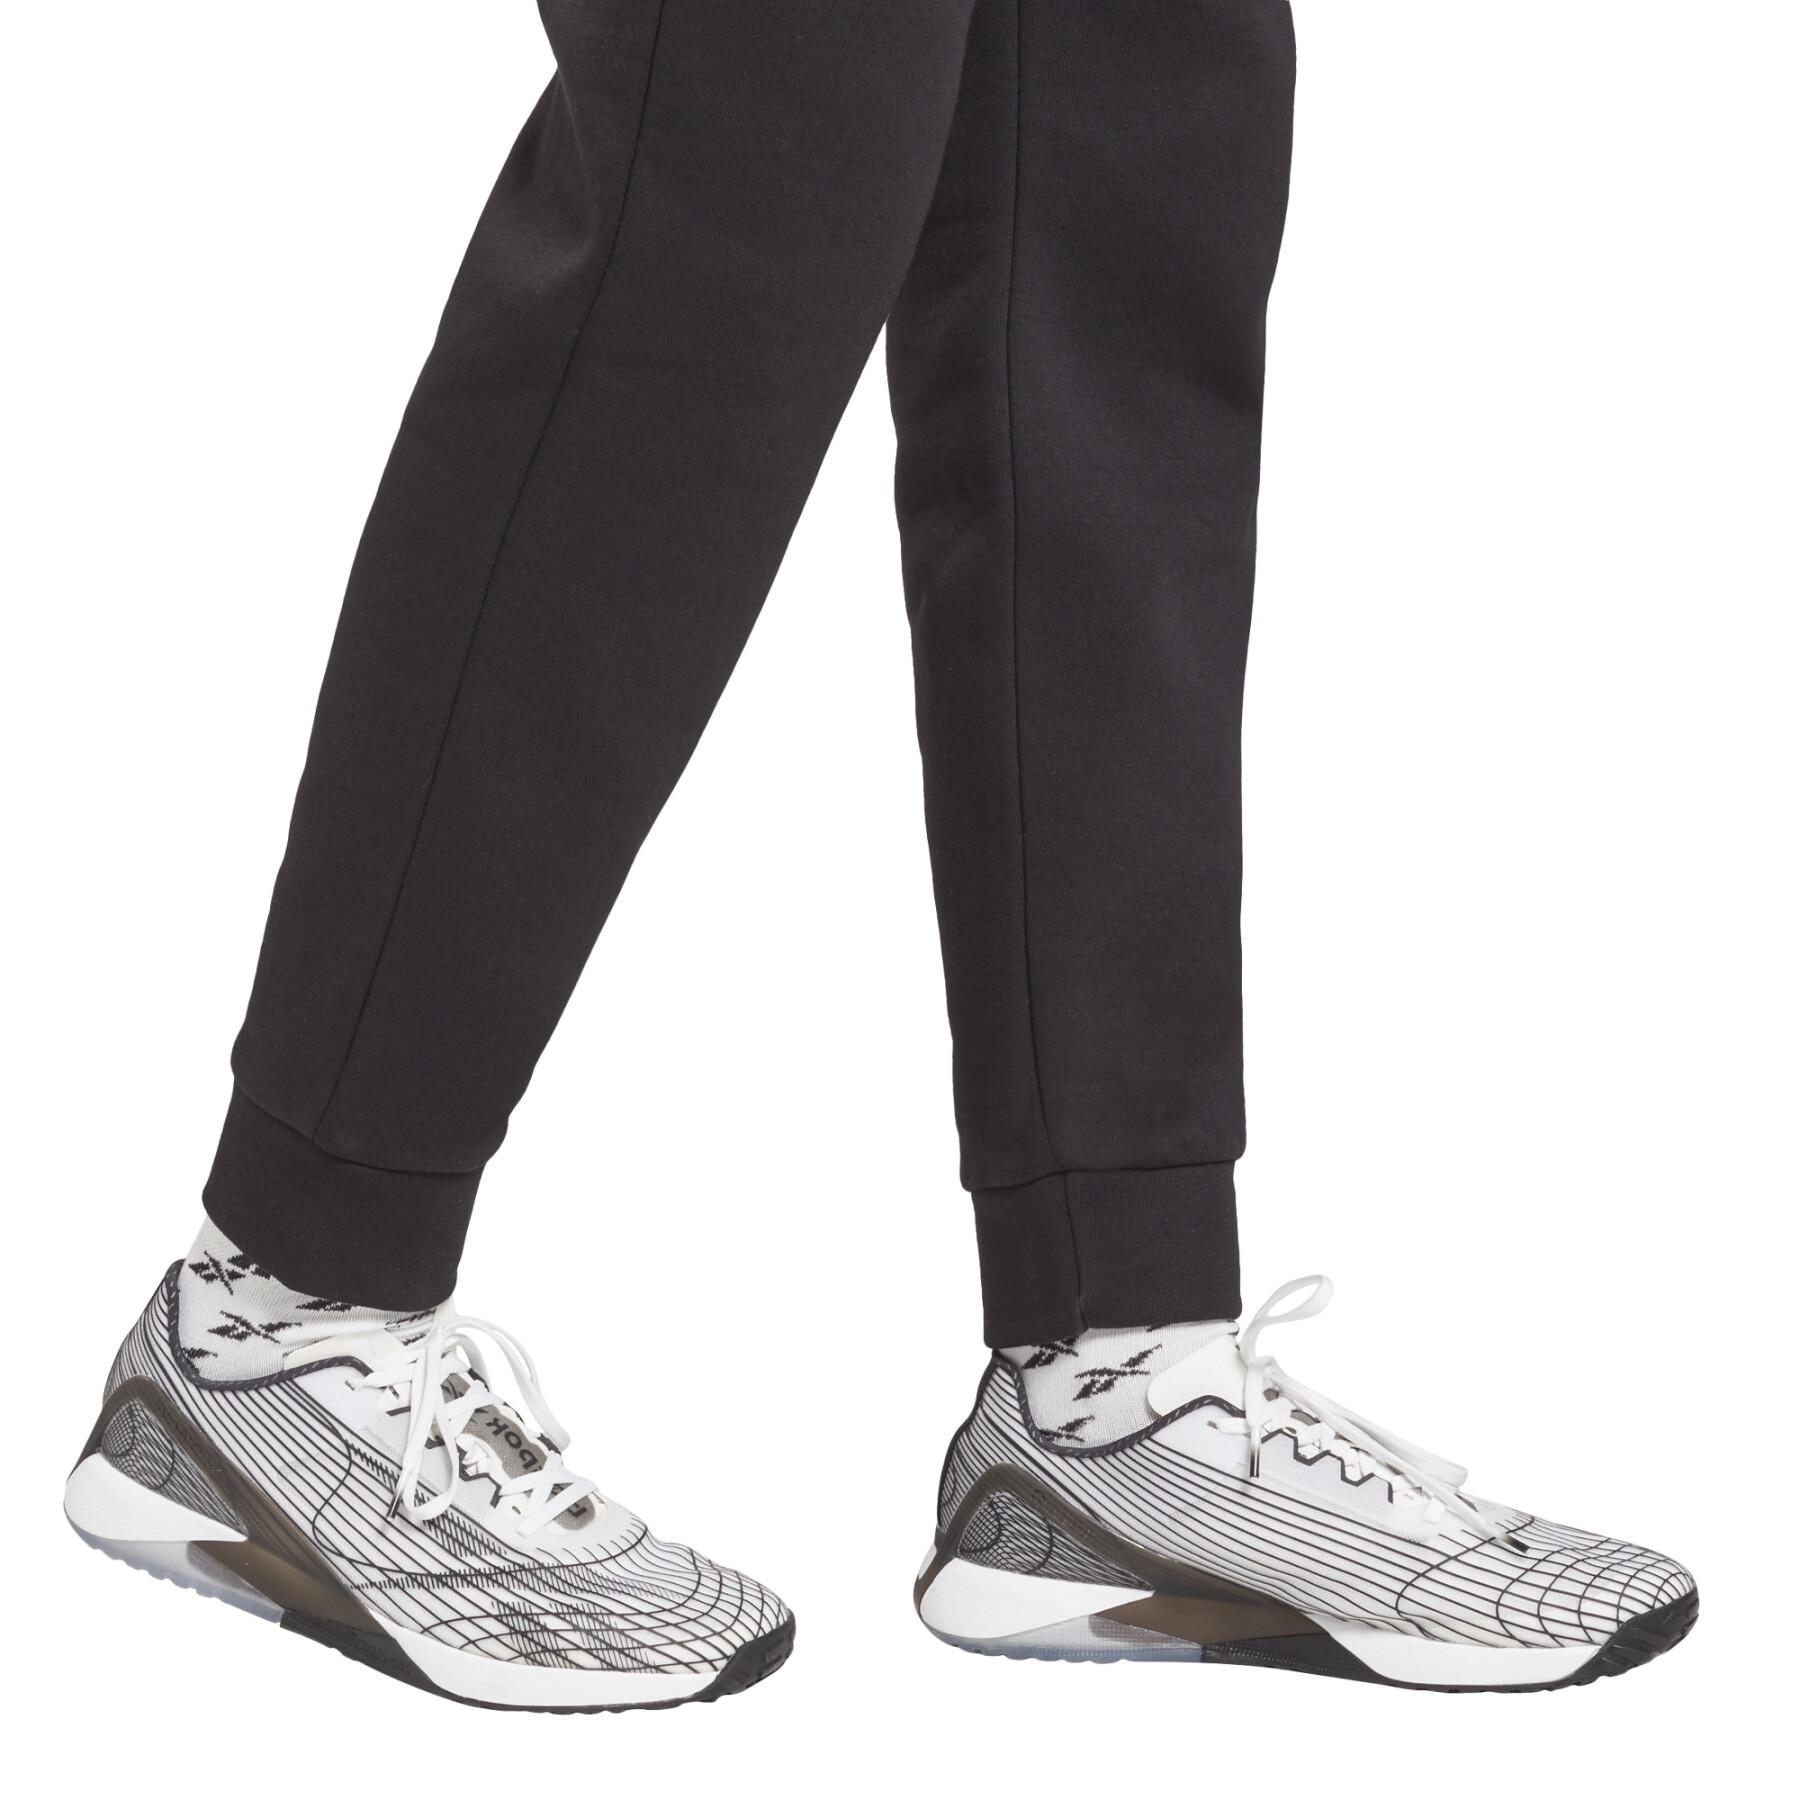 Women's jogging suit Reebok Identity